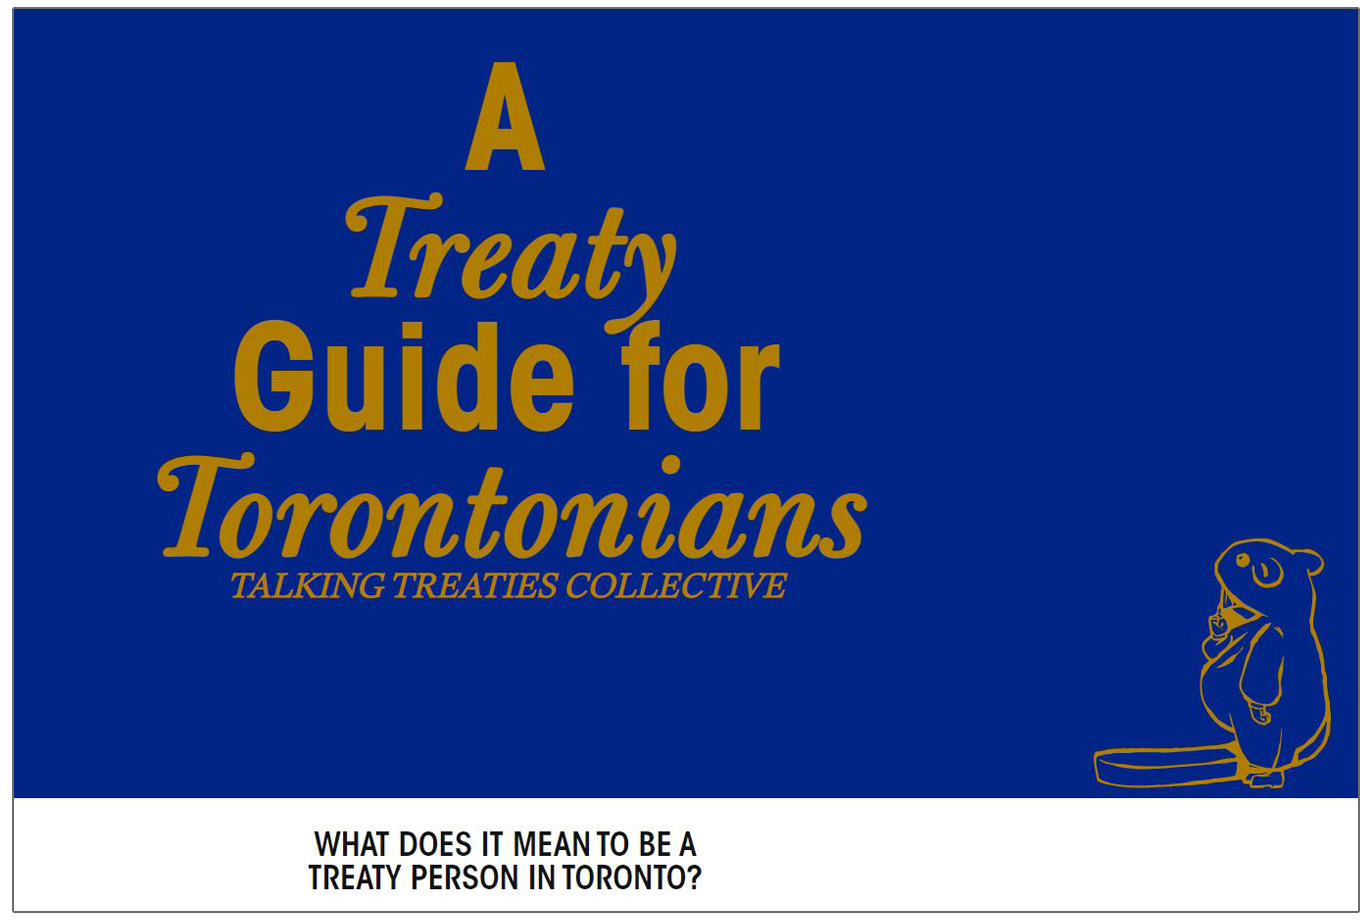 Talking Treaties - A Treaty Guide for Torontonians